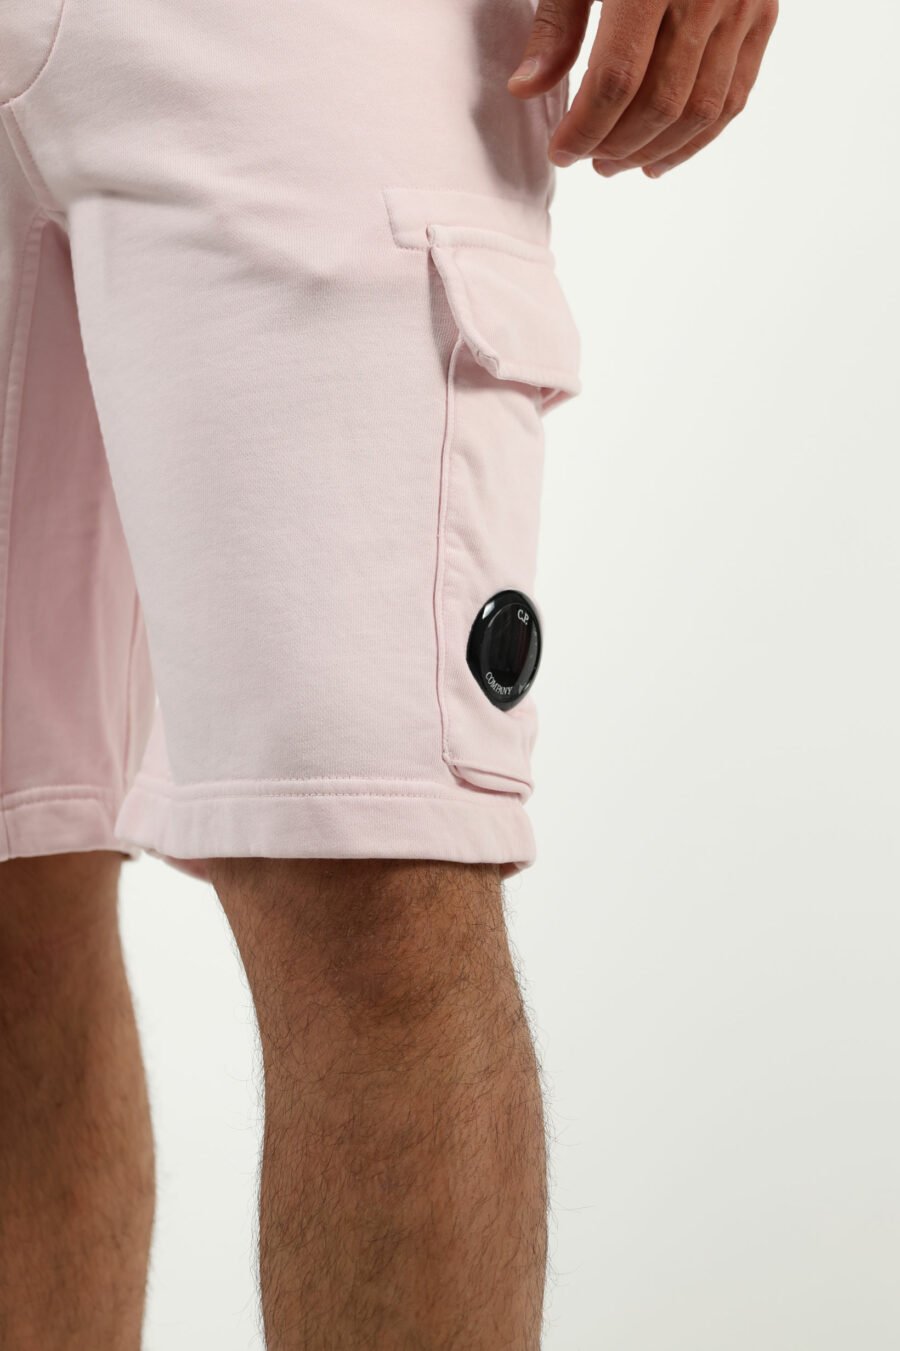 Pantalón de chándal midi rosa estilo cargo con minilogo lente - number13457